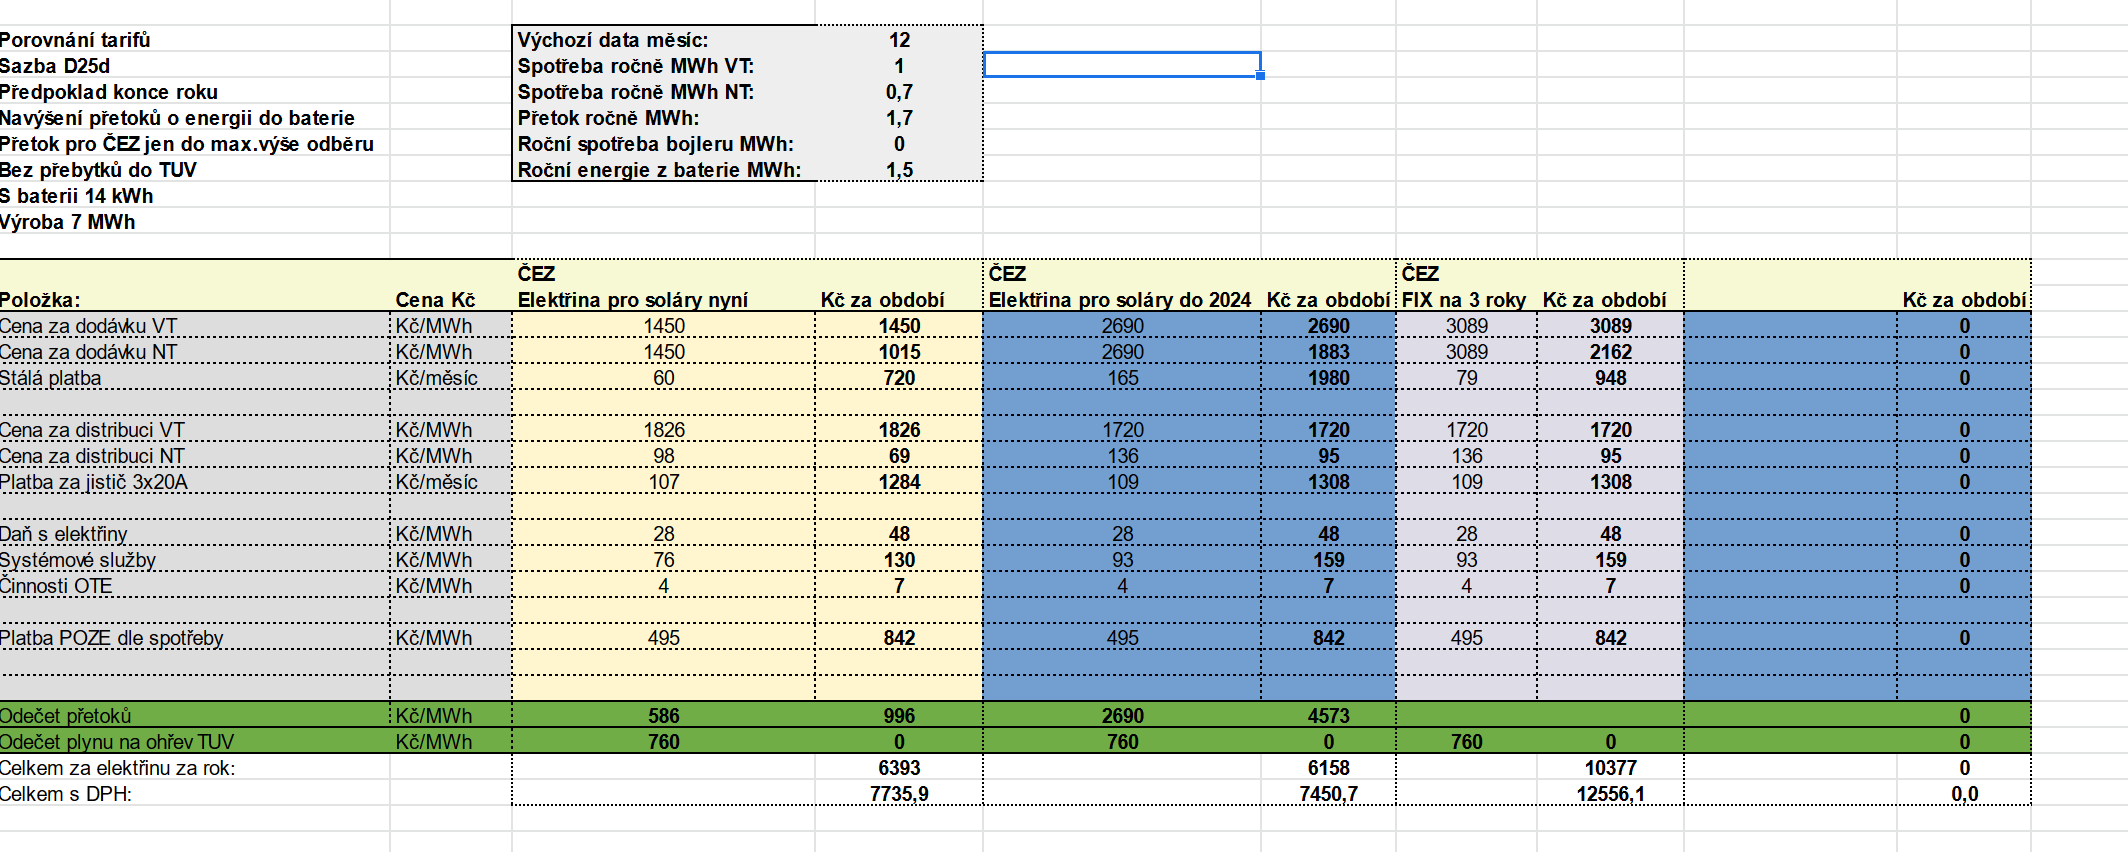 Screenshot 2021-12-02 at 08-19-13 Porovnání tarifů virtuální baterie od ČEZu a ostatních xlsx.png